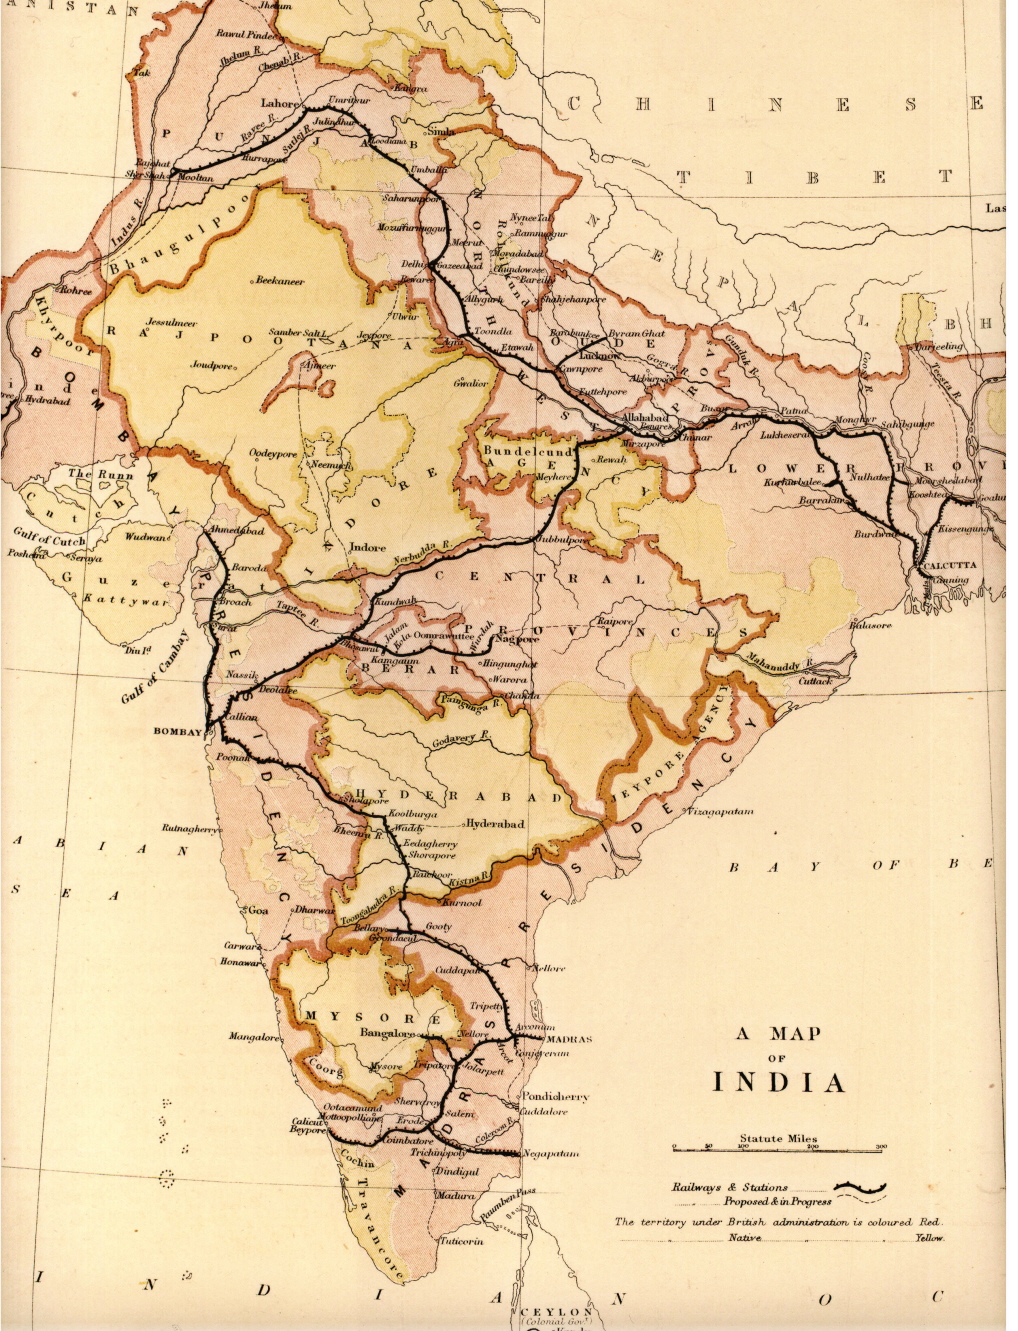 خريطة خطوط السكك الحديدية المكتملة والمخطط لها في الهند عام 1871، بعد ثلاثة عشر عاماً من انتهاء حكم الشركة.